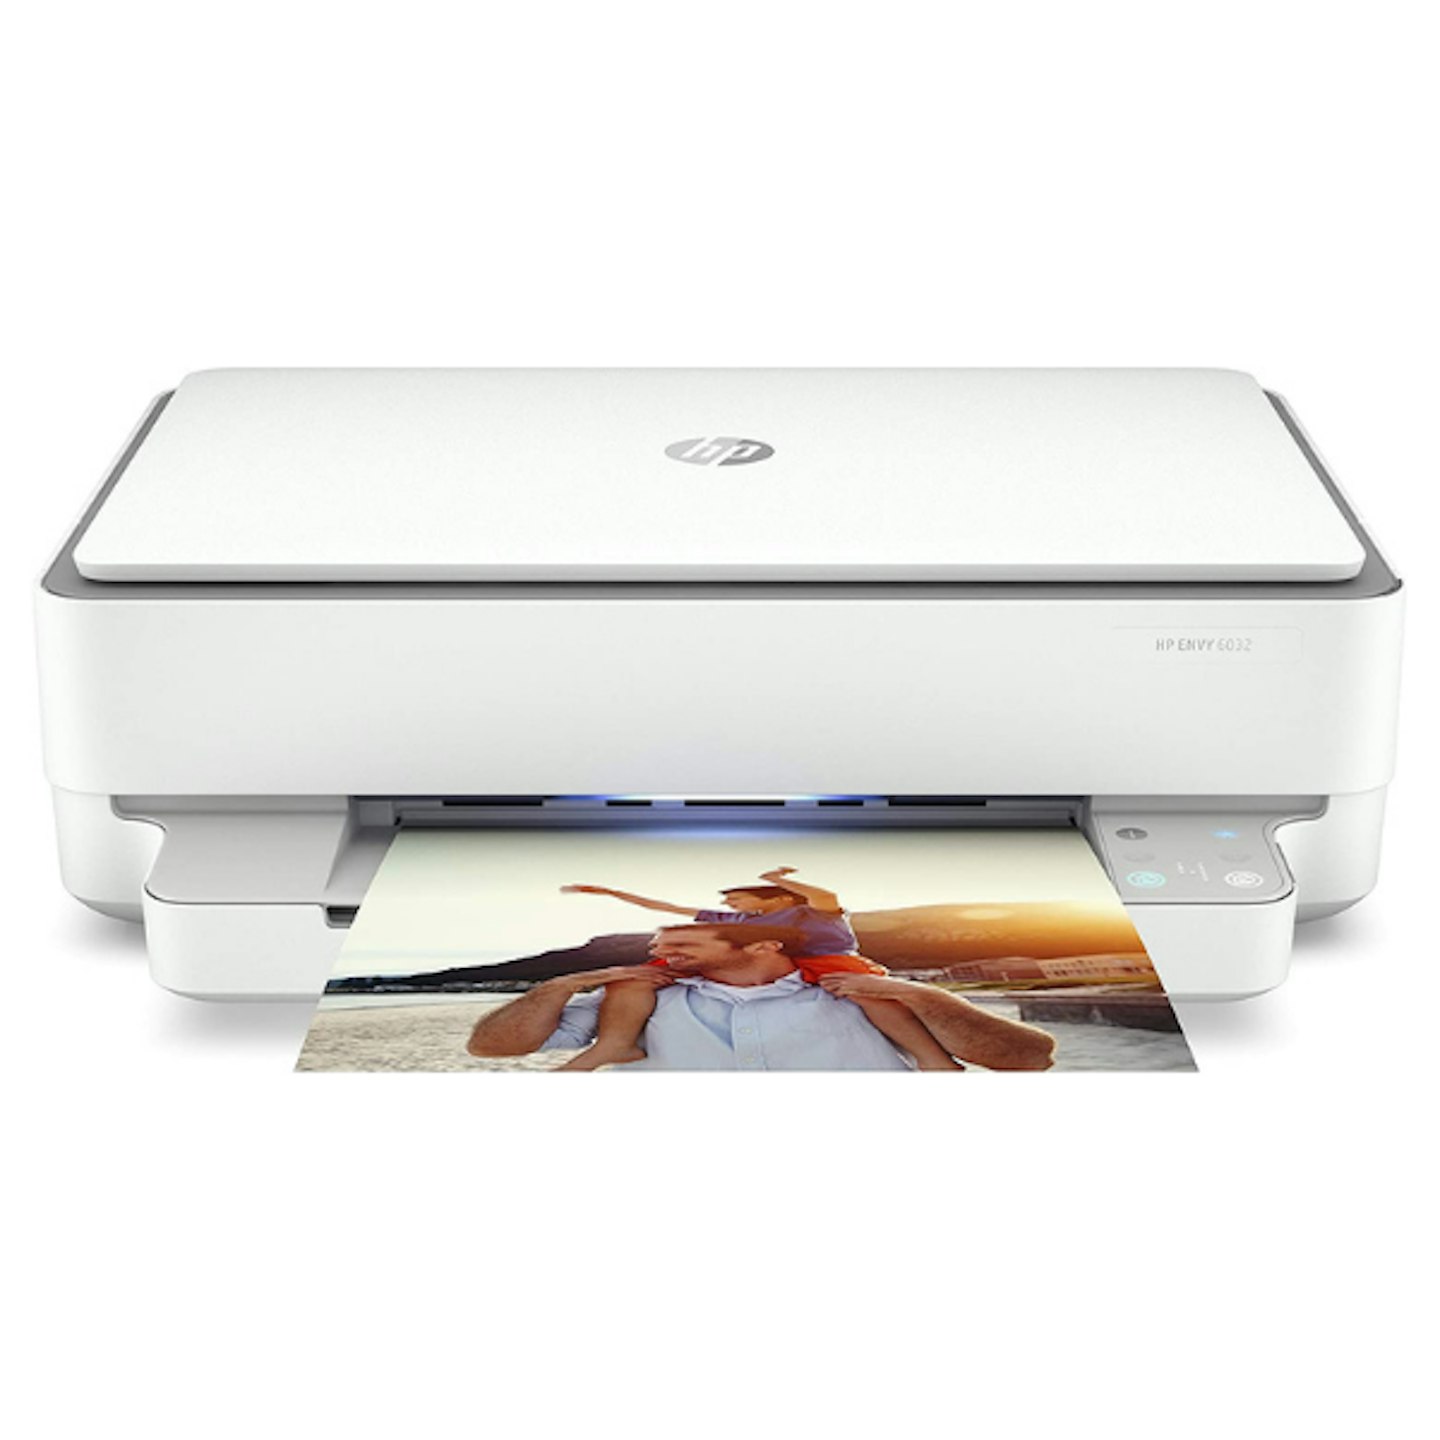 HP ENVY 6032e Printer